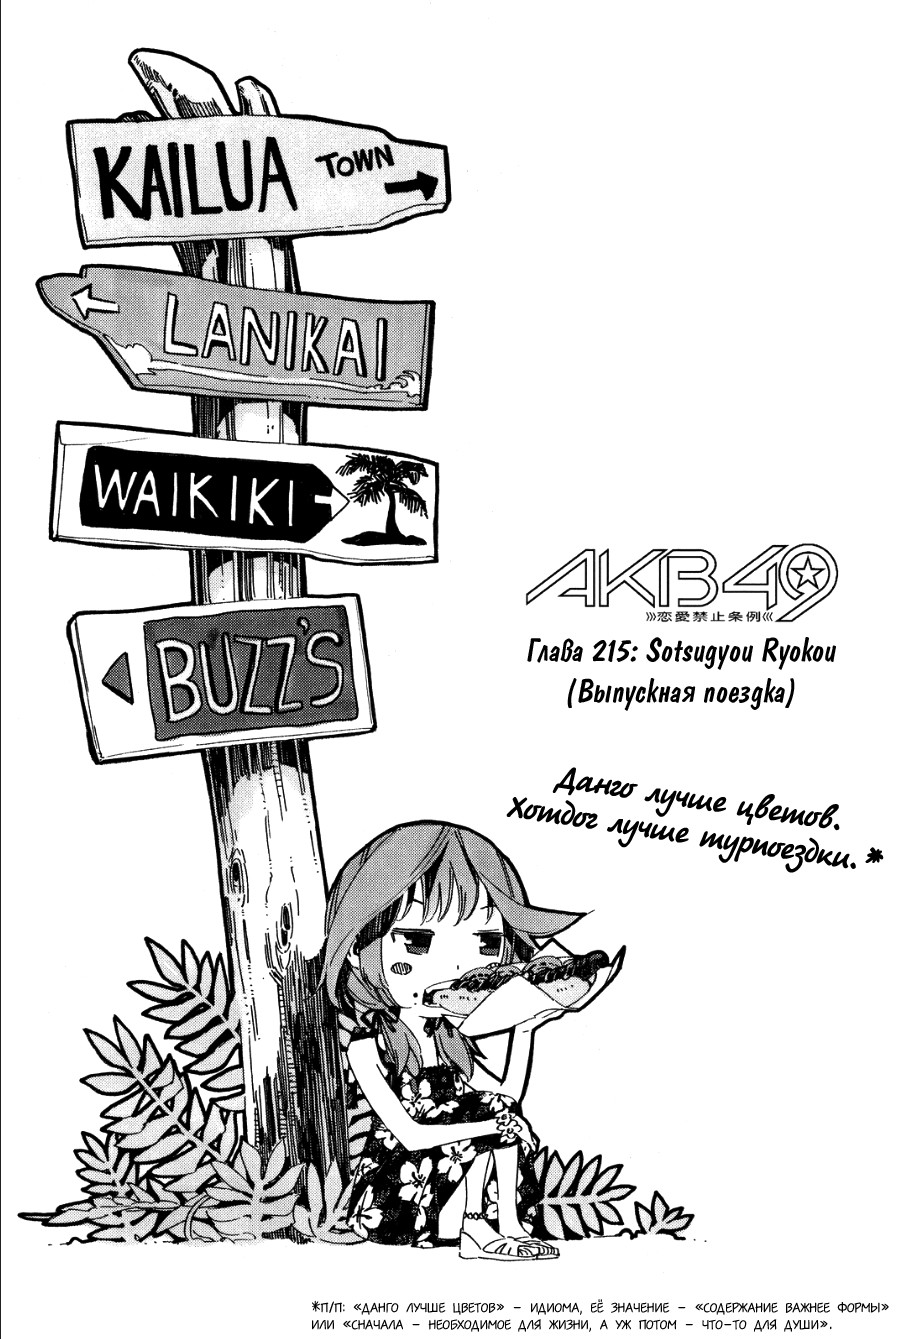 AKB49: Правила против любви 24 - 215 Sotsugyou Ryokou (Выпускная поездка)